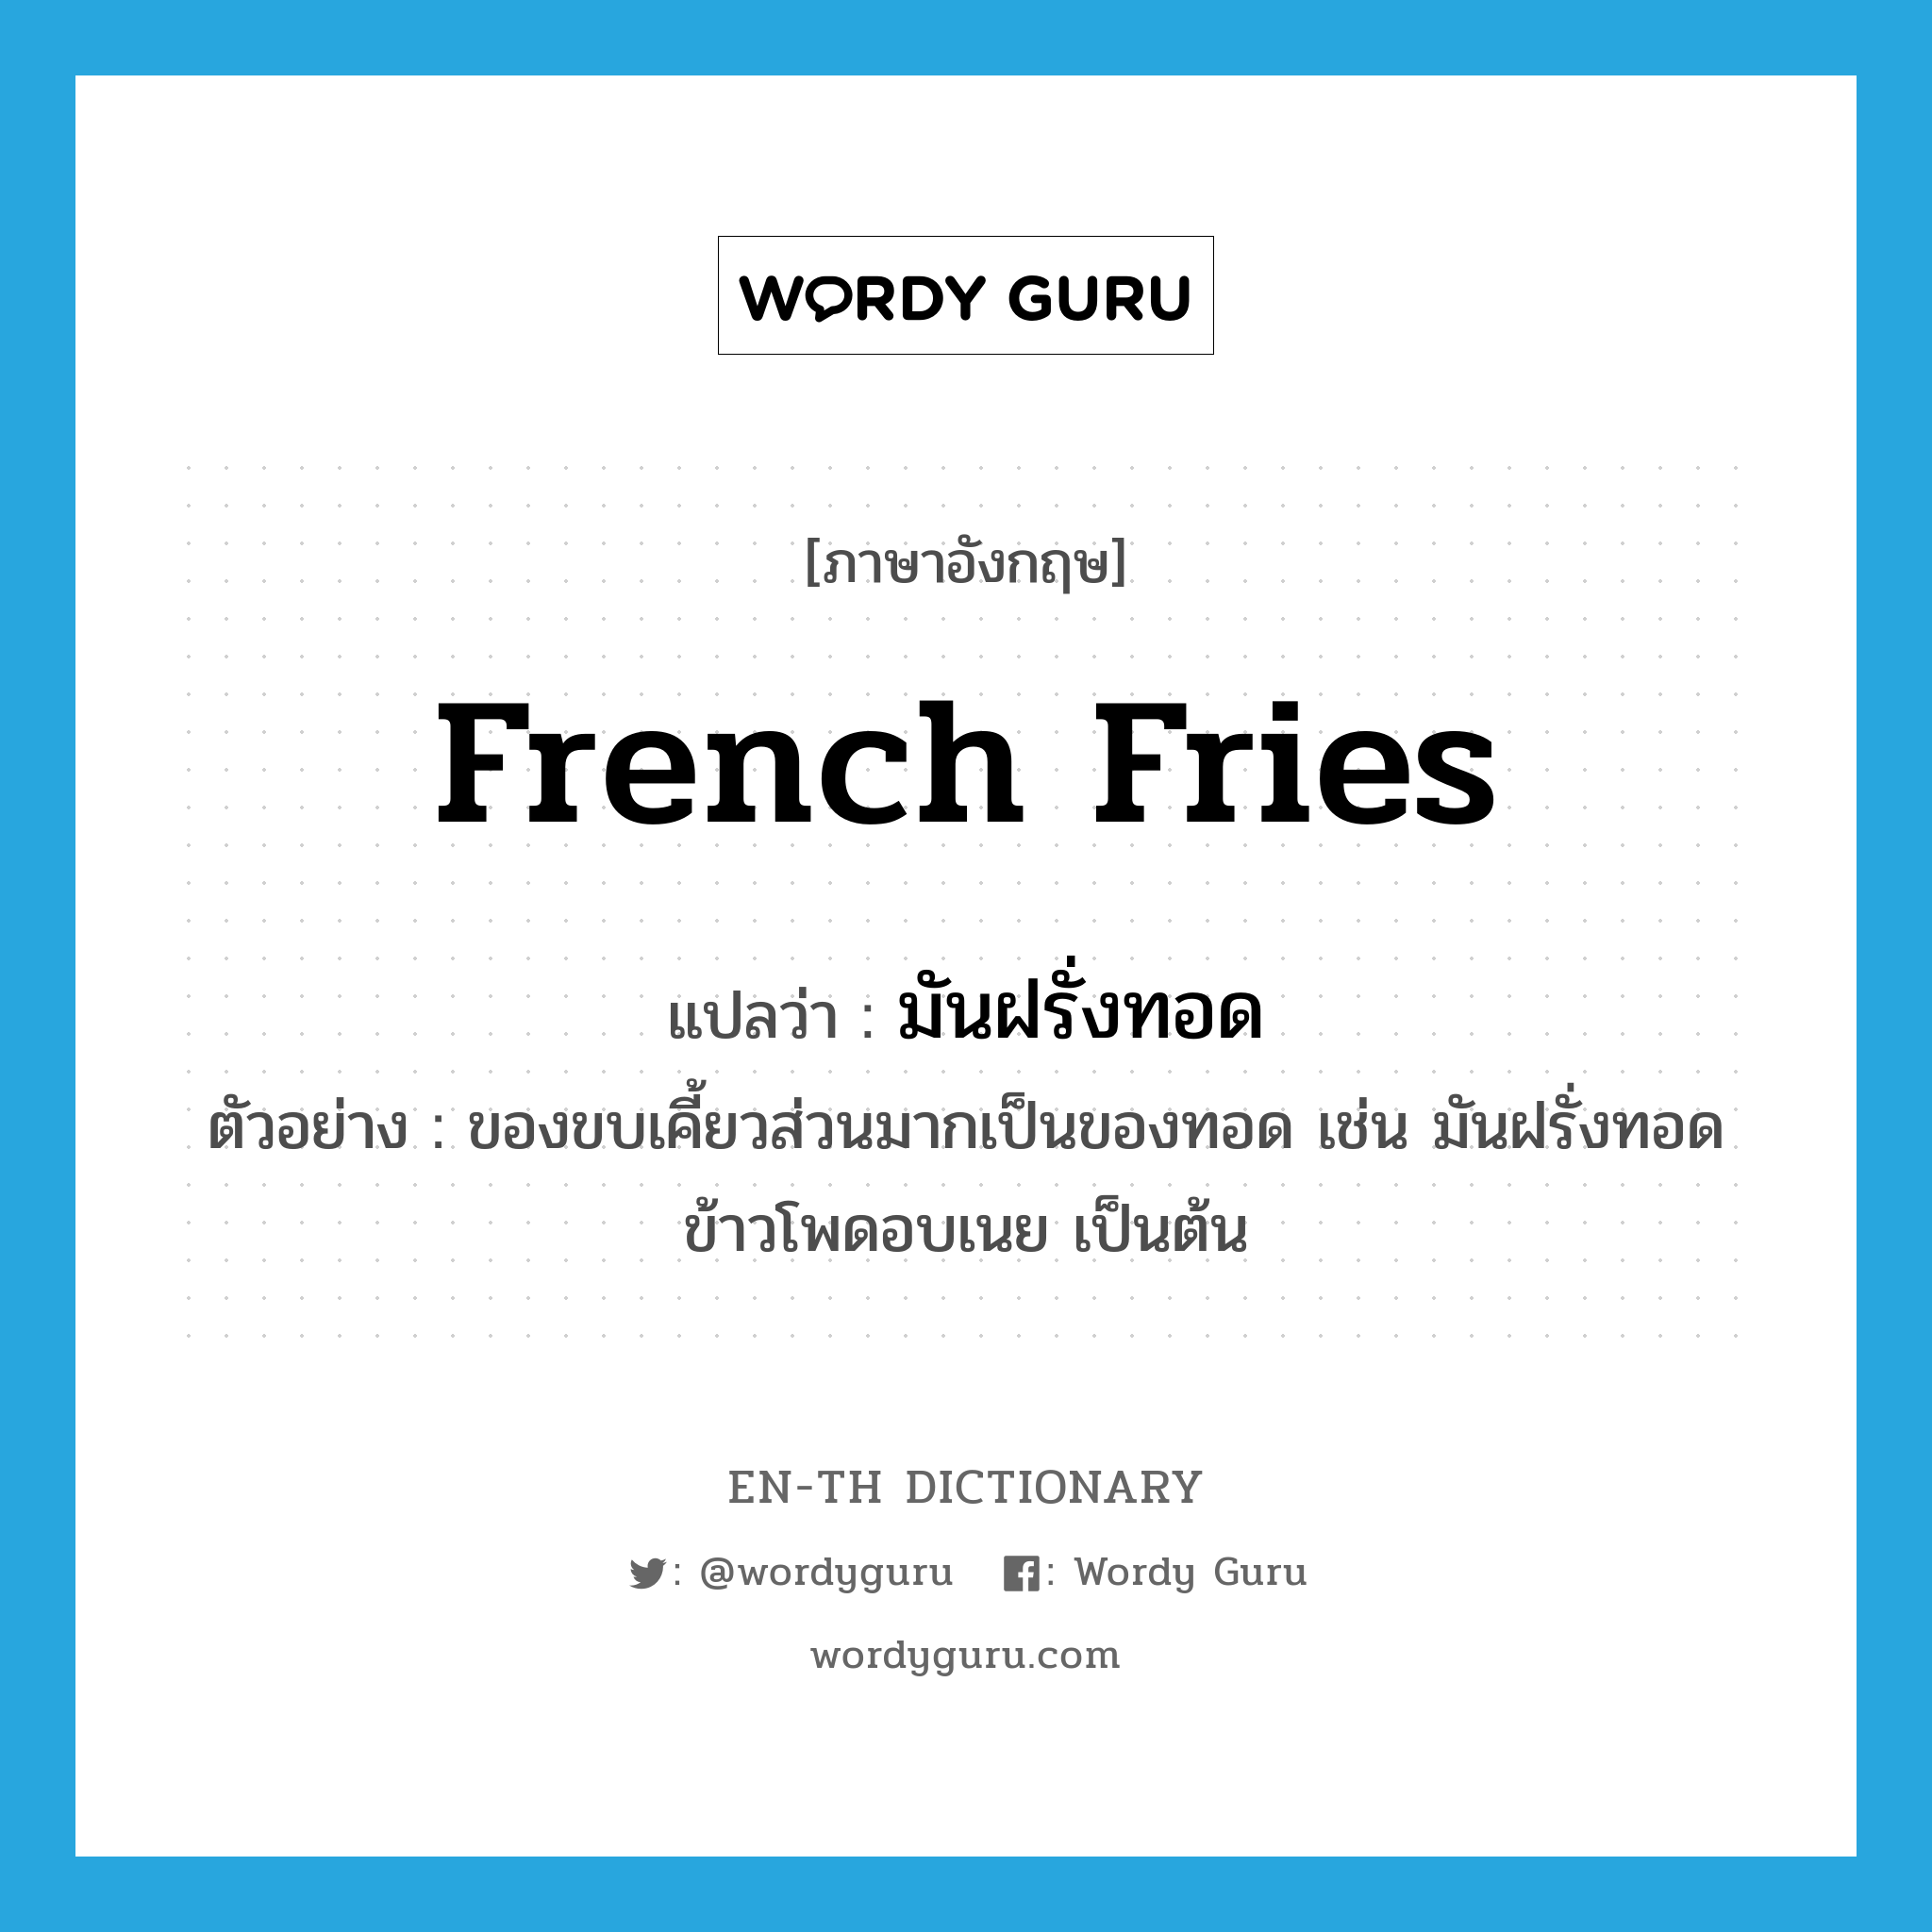 French fries แปลว่า?, คำศัพท์ภาษาอังกฤษ French fries แปลว่า มันฝรั่งทอด ประเภท N ตัวอย่าง ของขบเคี้ยวส่วนมากเป็นของทอด เช่น มันฝรั่งทอด ข้าวโพดอบเนย เป็นต้น หมวด N